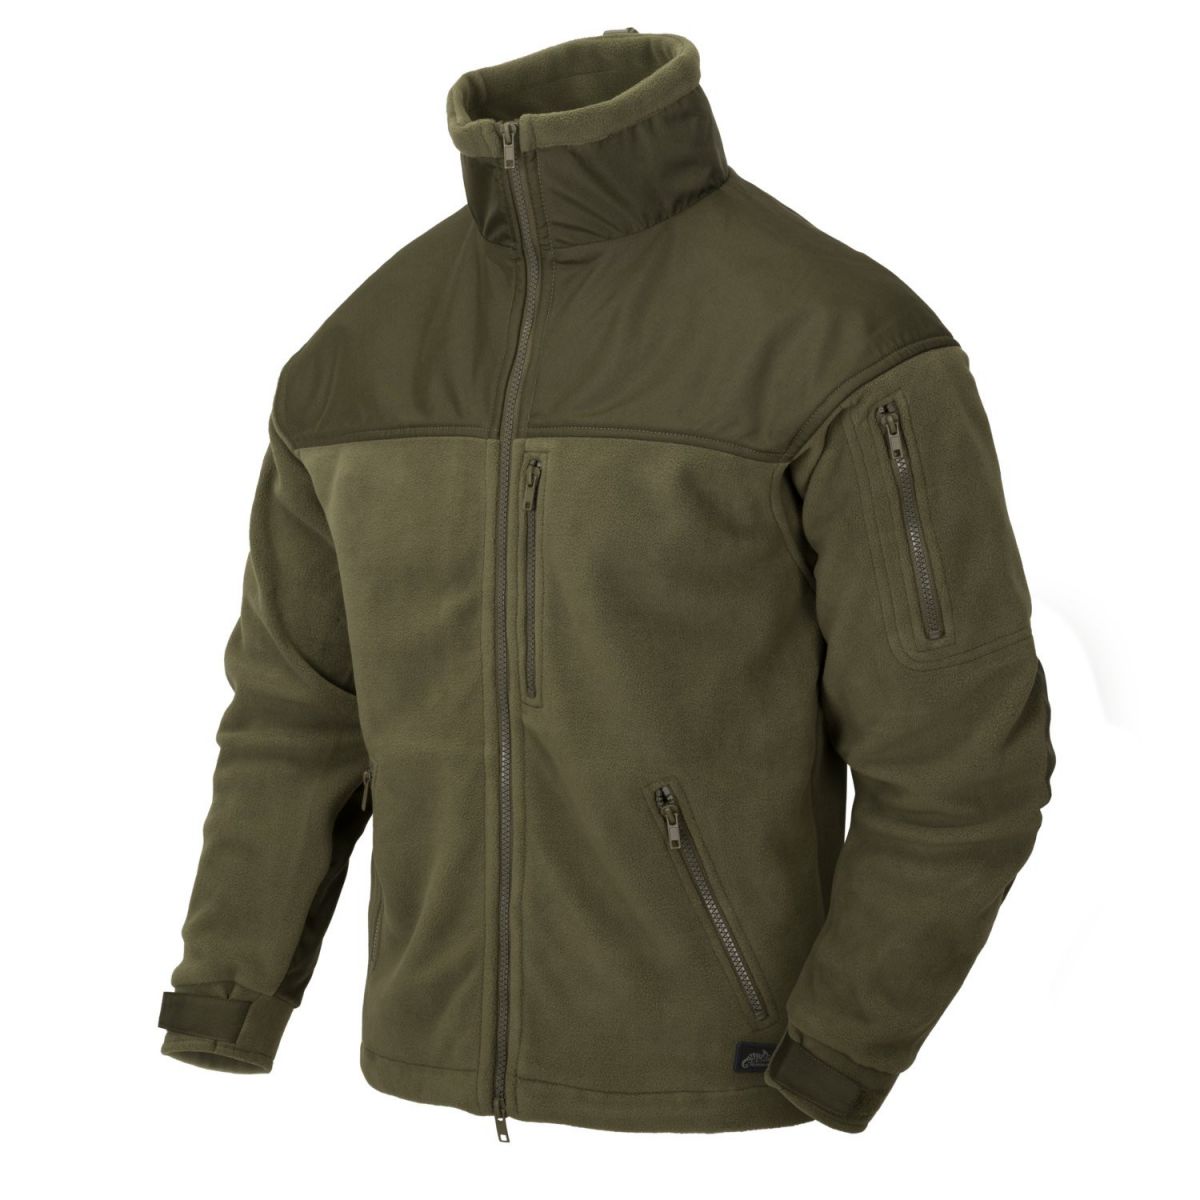 Флісова куртка Helikon-Tex Classic Army. Колір Olive Green / Зелена олива. Розмір S